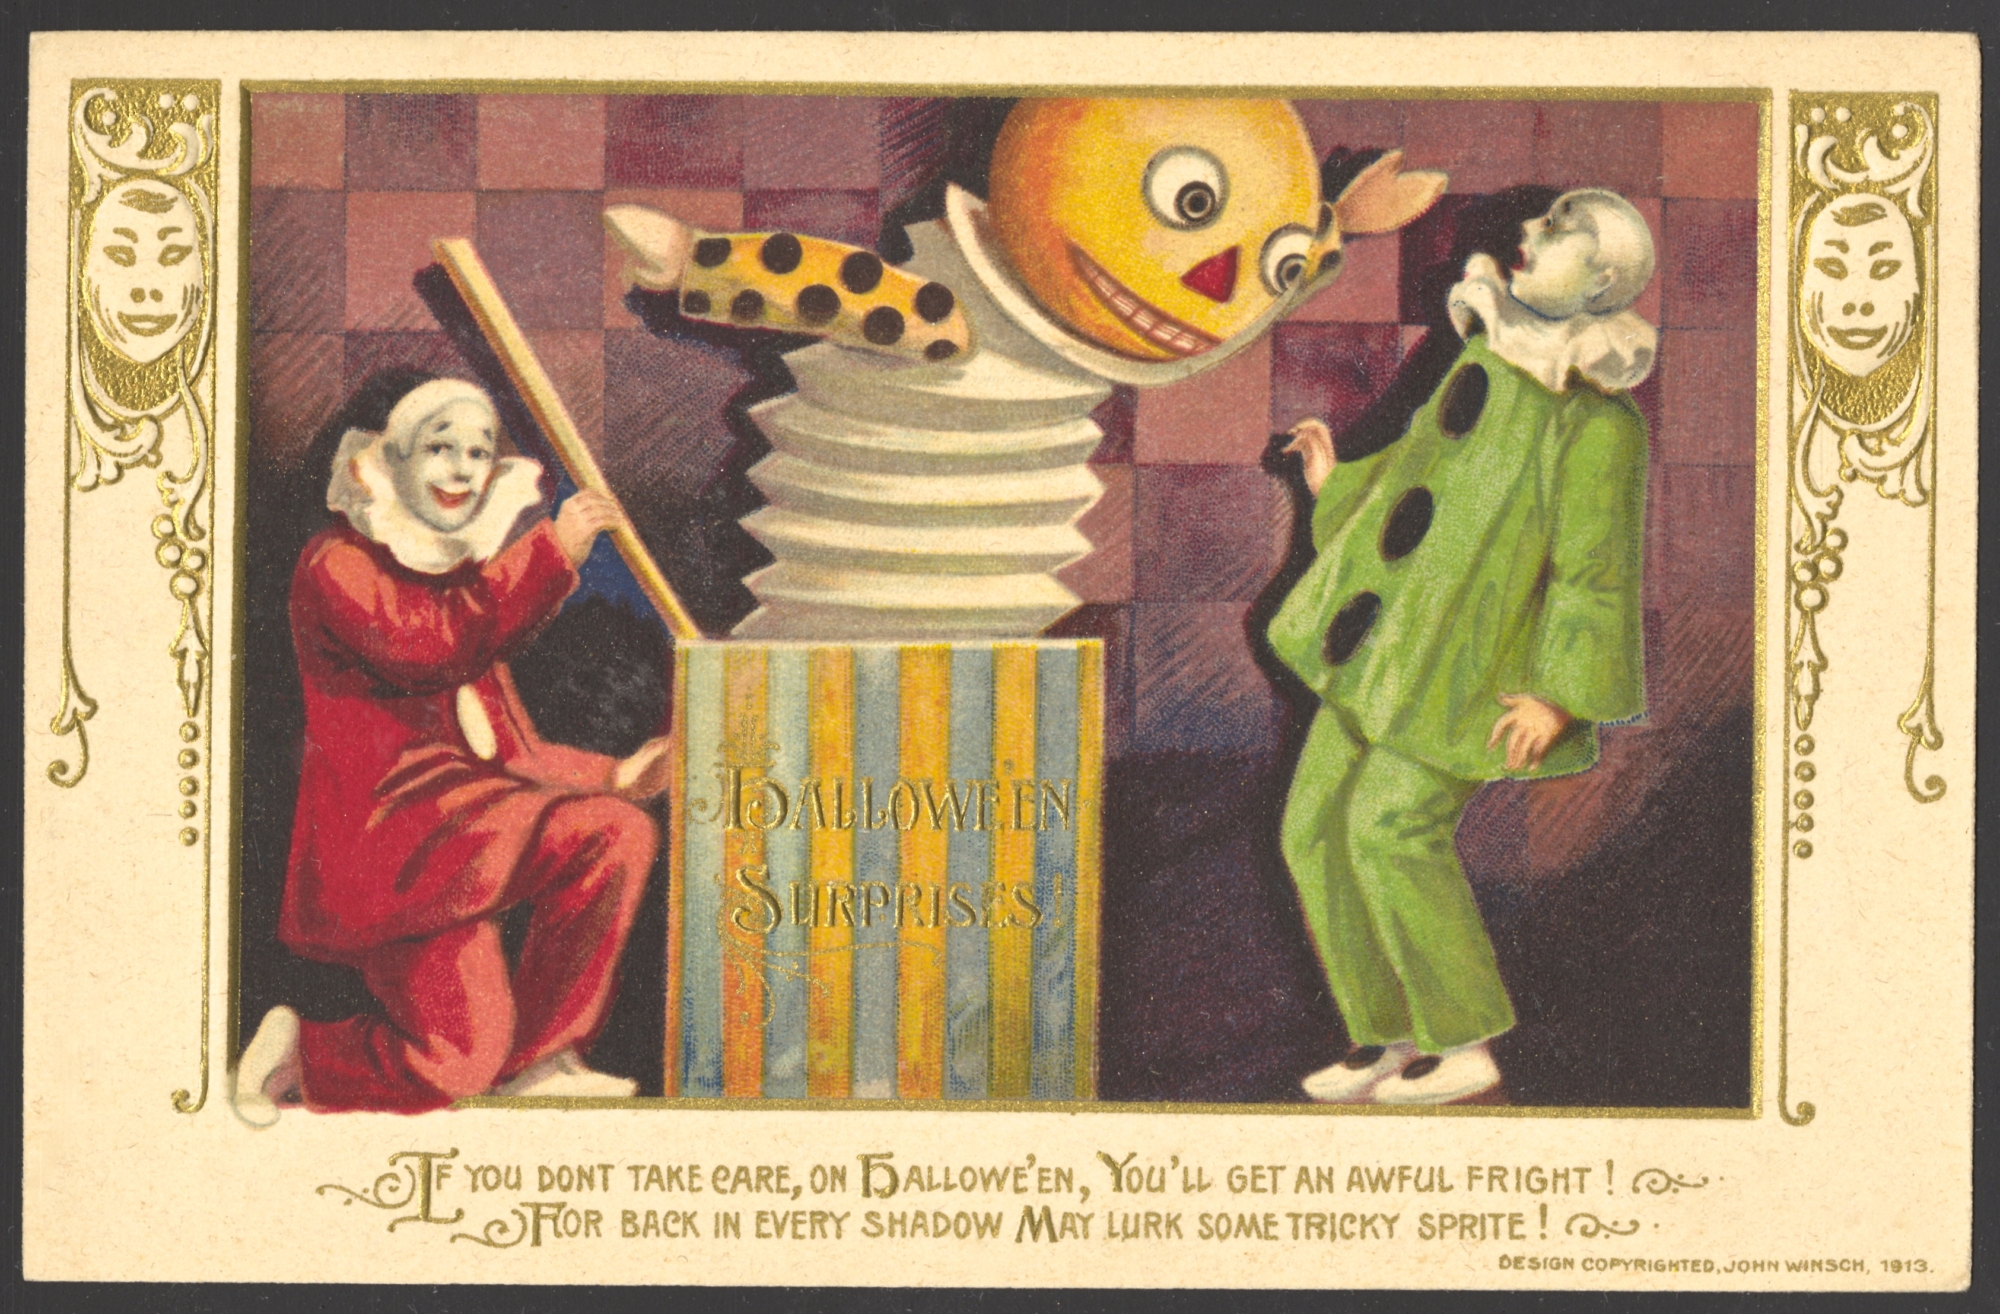 Winsch Halloween Postcard (mask set) copyright 1913